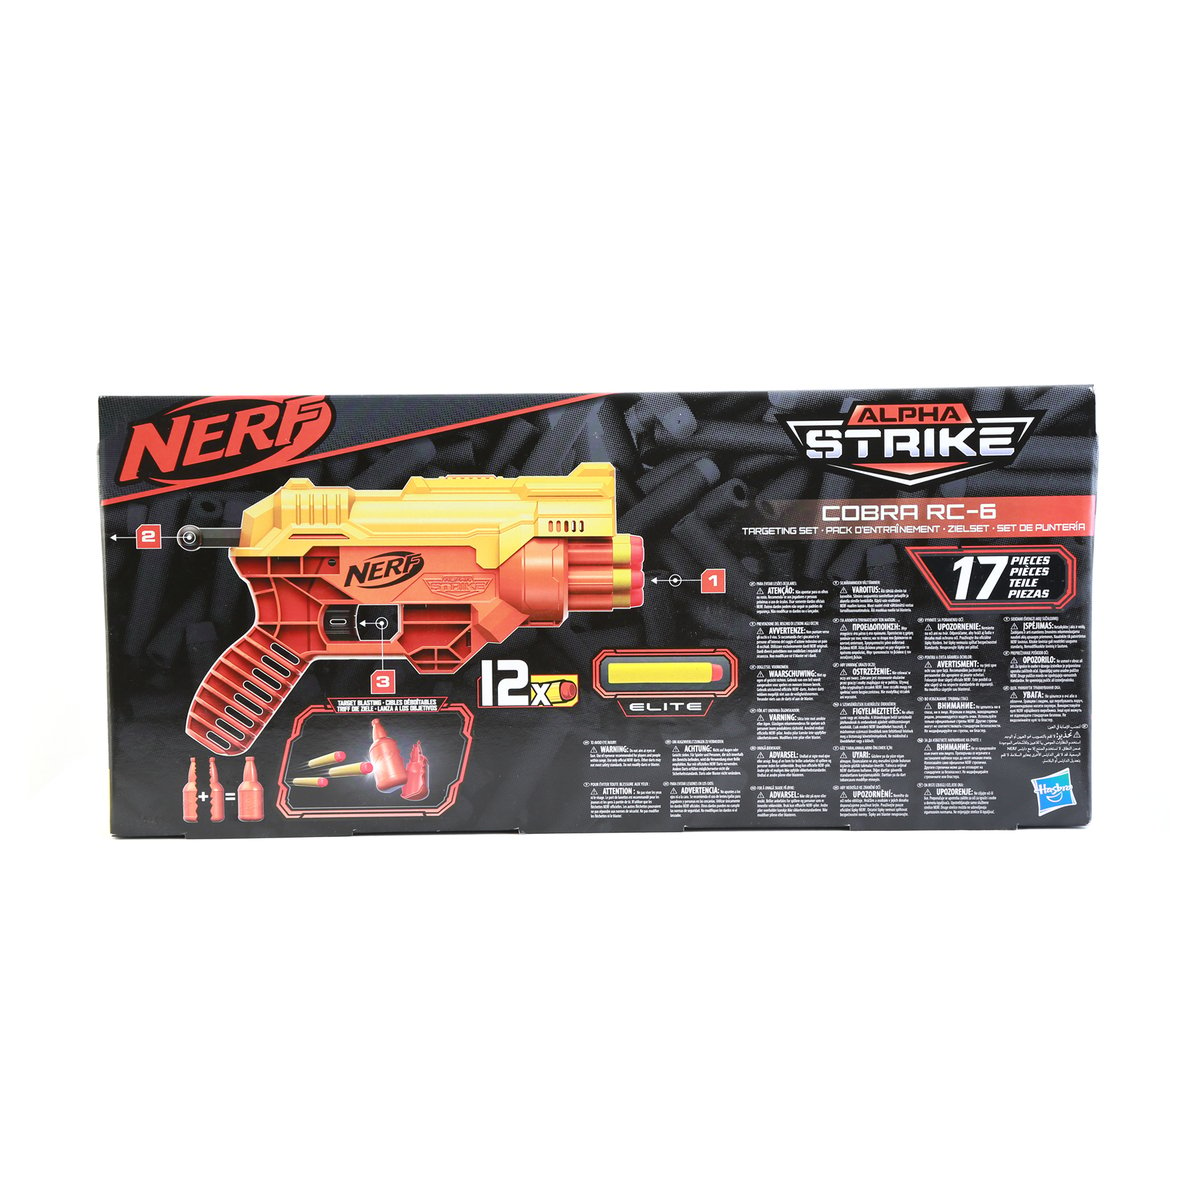 Nerf Alpha Strike Cobra RC 6 TGT Set E7857